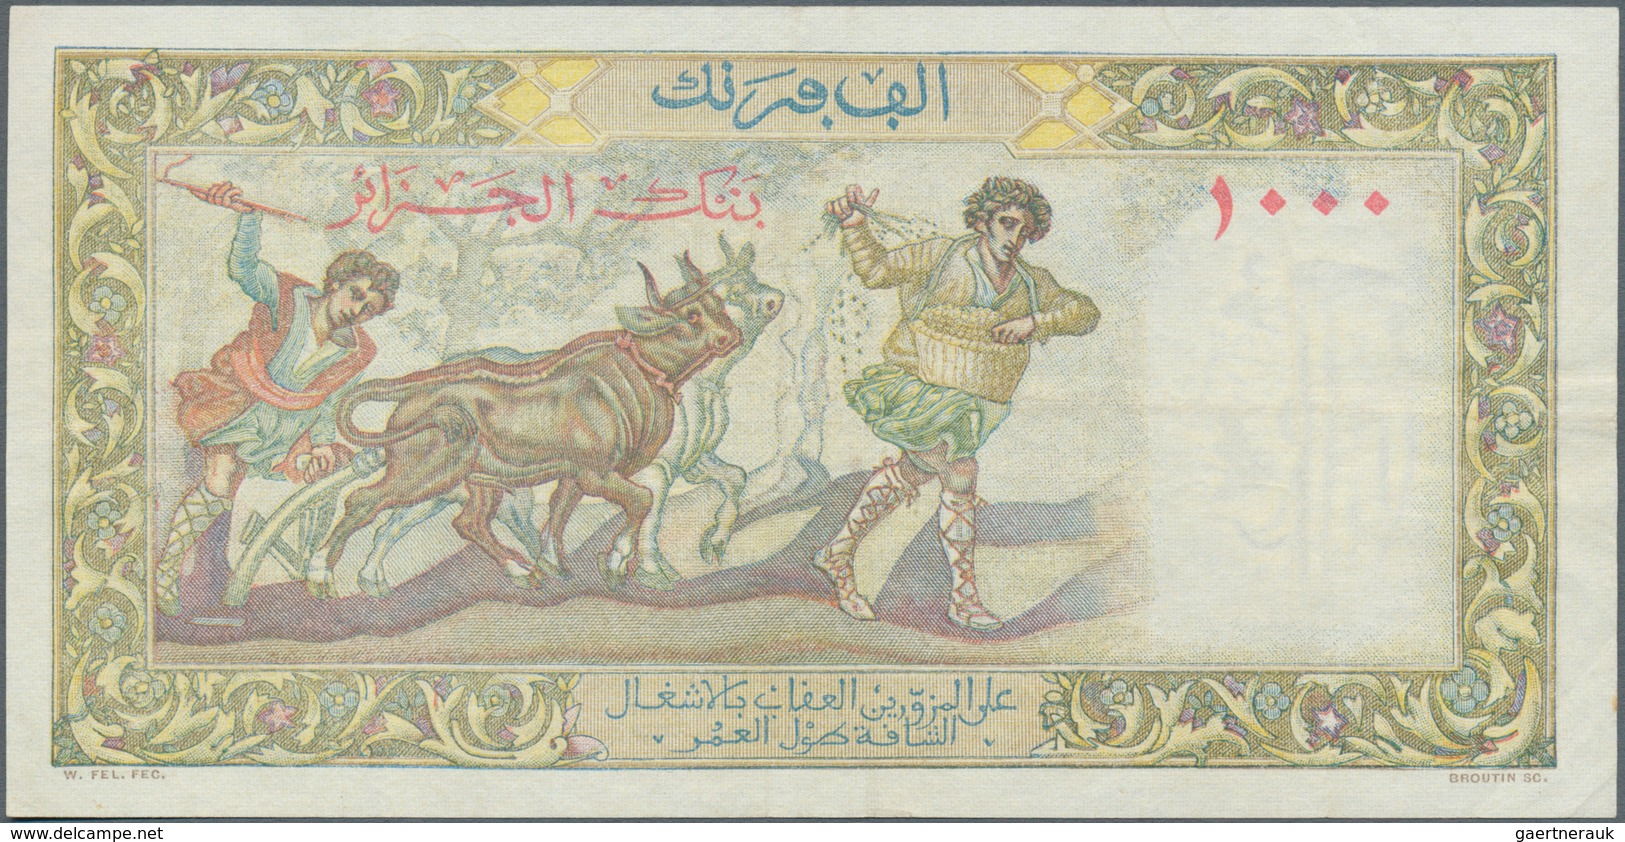 01009 Algeria / Algerien: 1000 Francs 1947 P. 104, Light Folds In Paper, No Holes, Still Nice Colors And S - Algérie